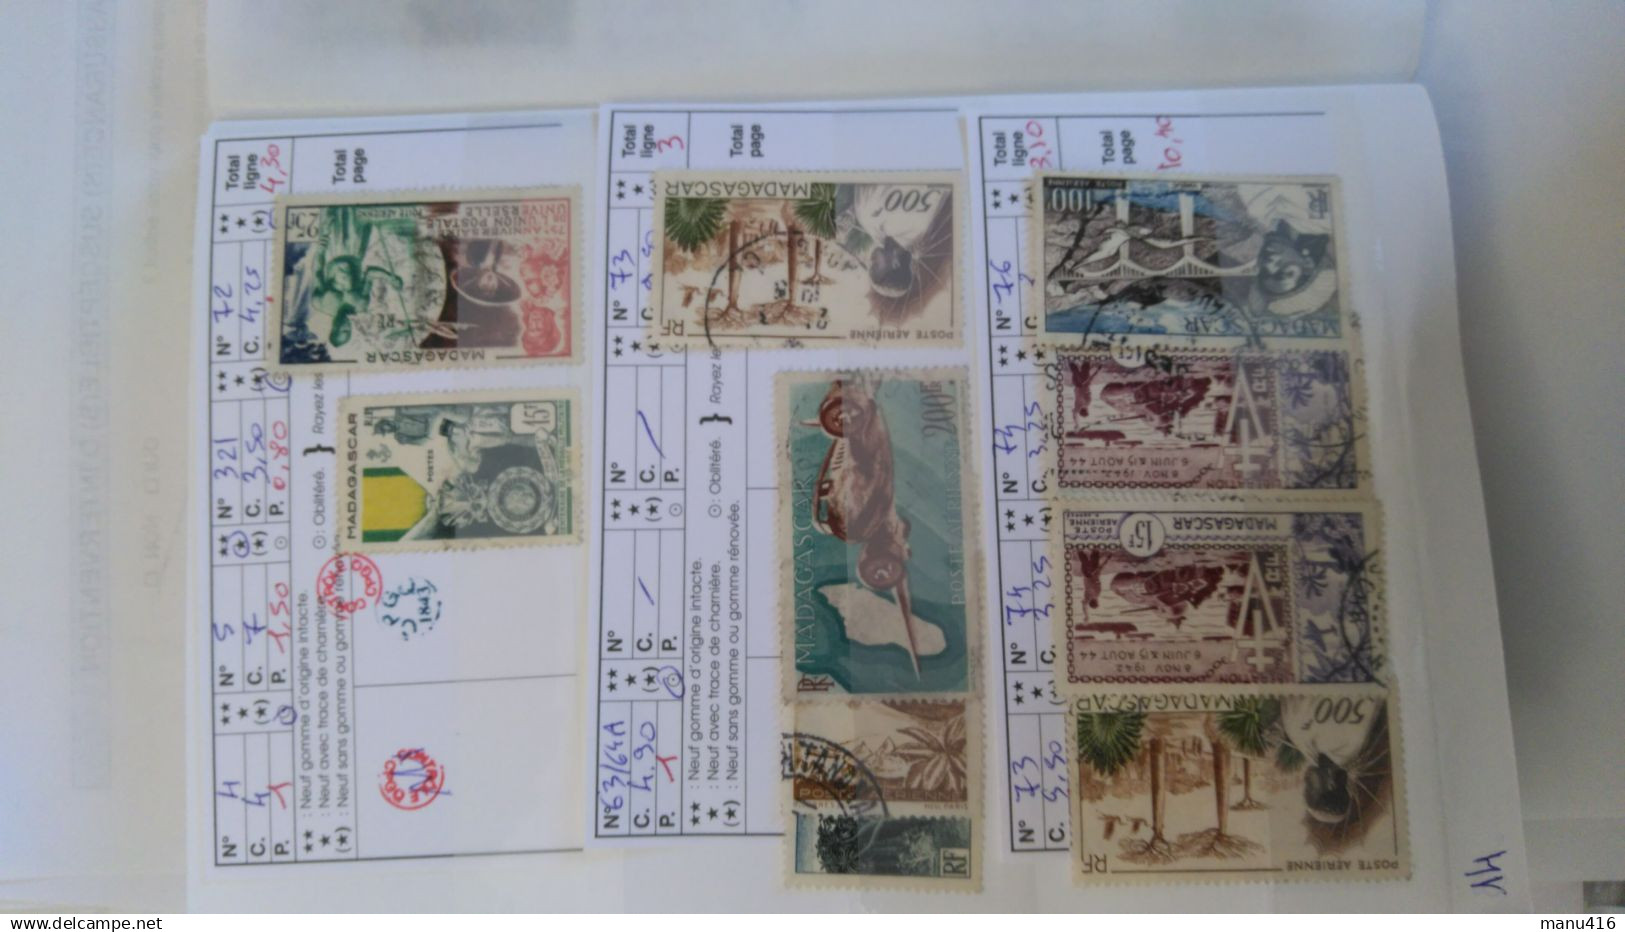 Madagascar lot de 88 timbres neufs et oblitérés, cote 318 euros très anciens + PA, voir le scan. Port offert.